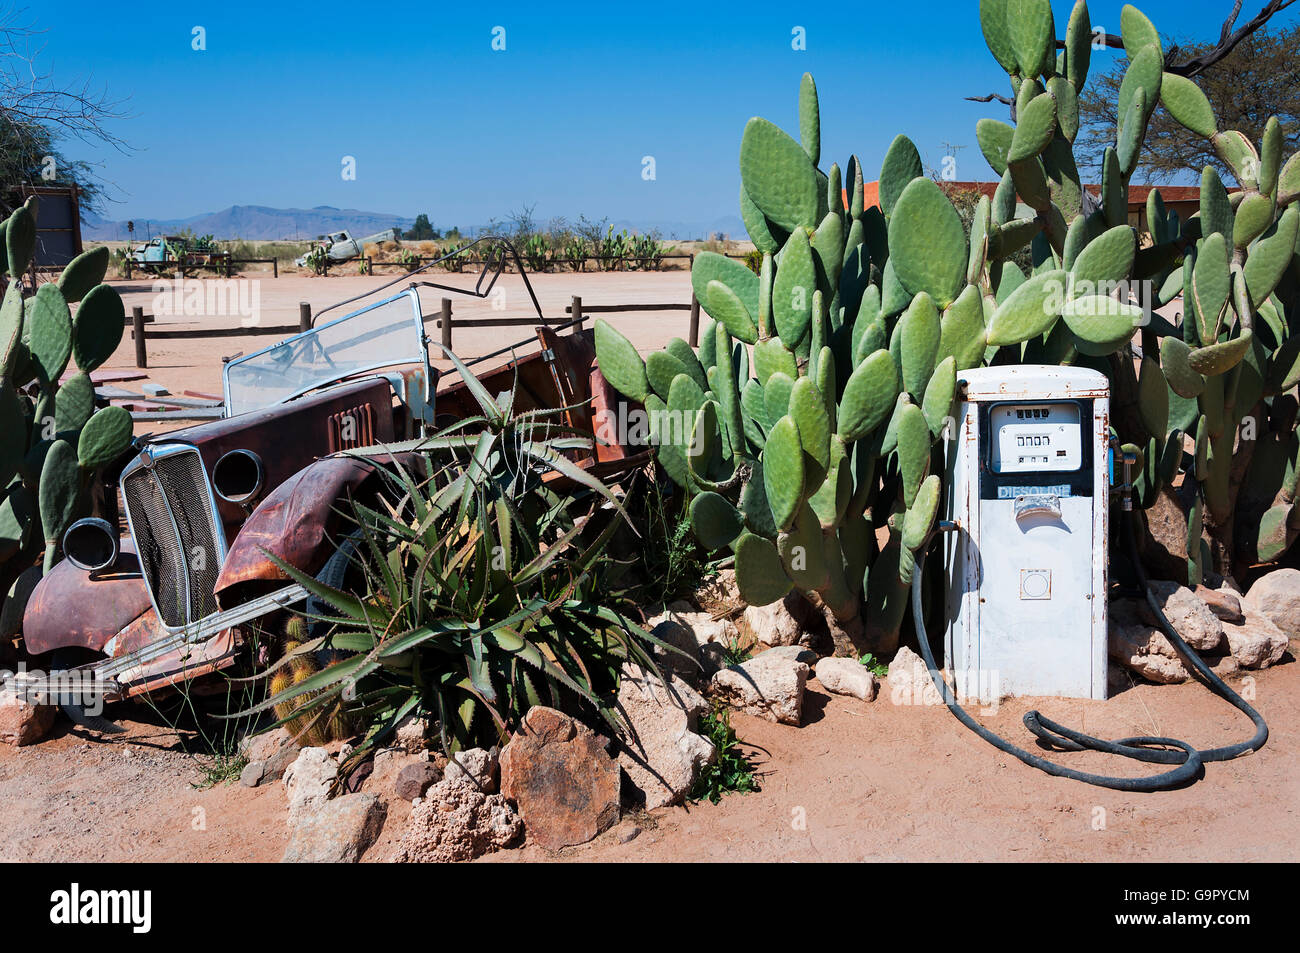 Une pompe d'essence abandonnés et vieille voiture en solitaire, la Namibie Banque D'Images